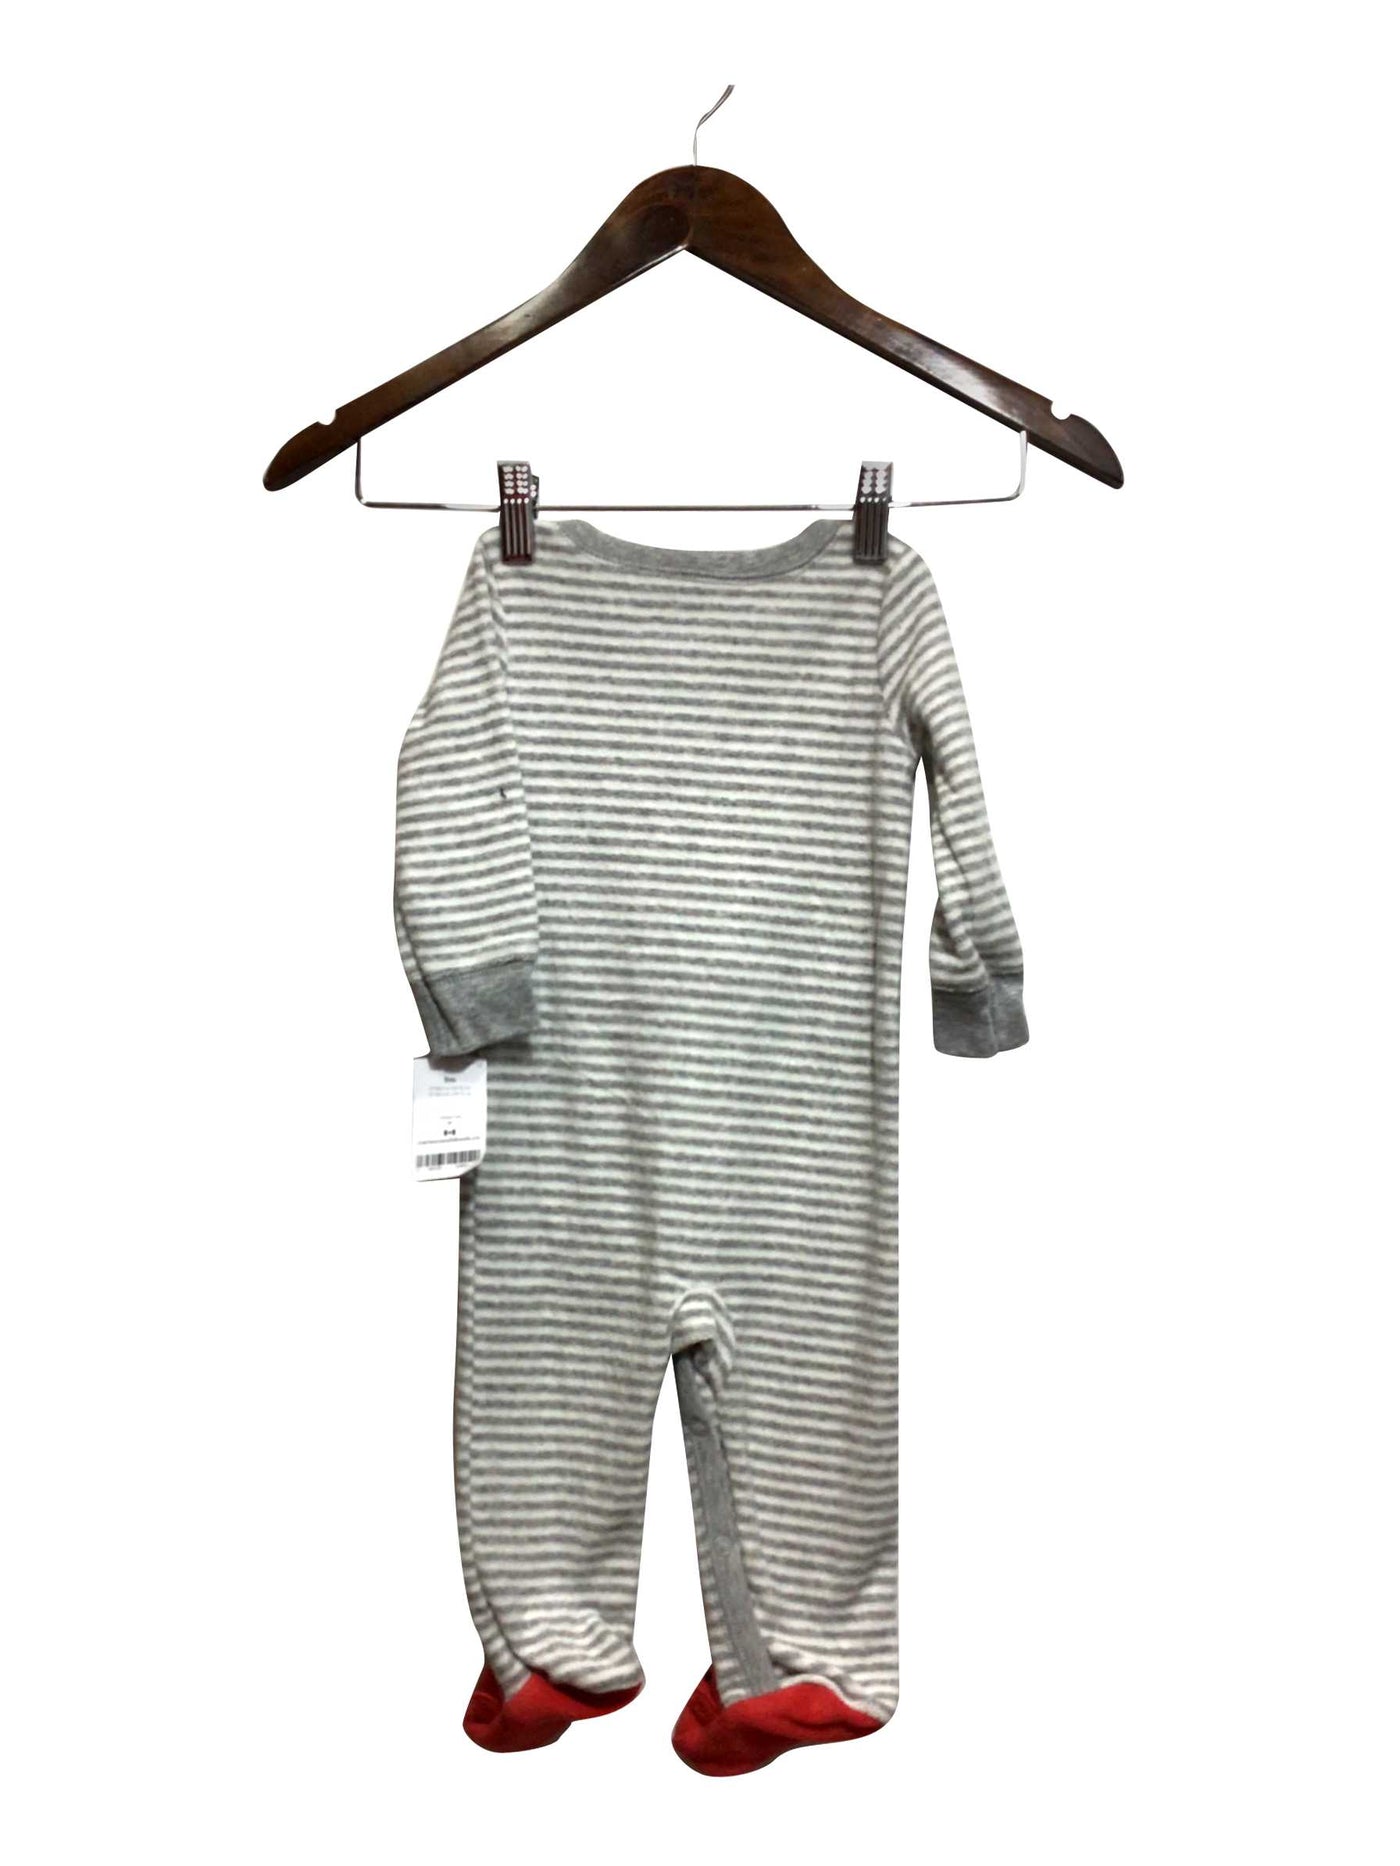 CARTER'S Regular fit Pajamas in Gray  -  9M  5.99 Koop